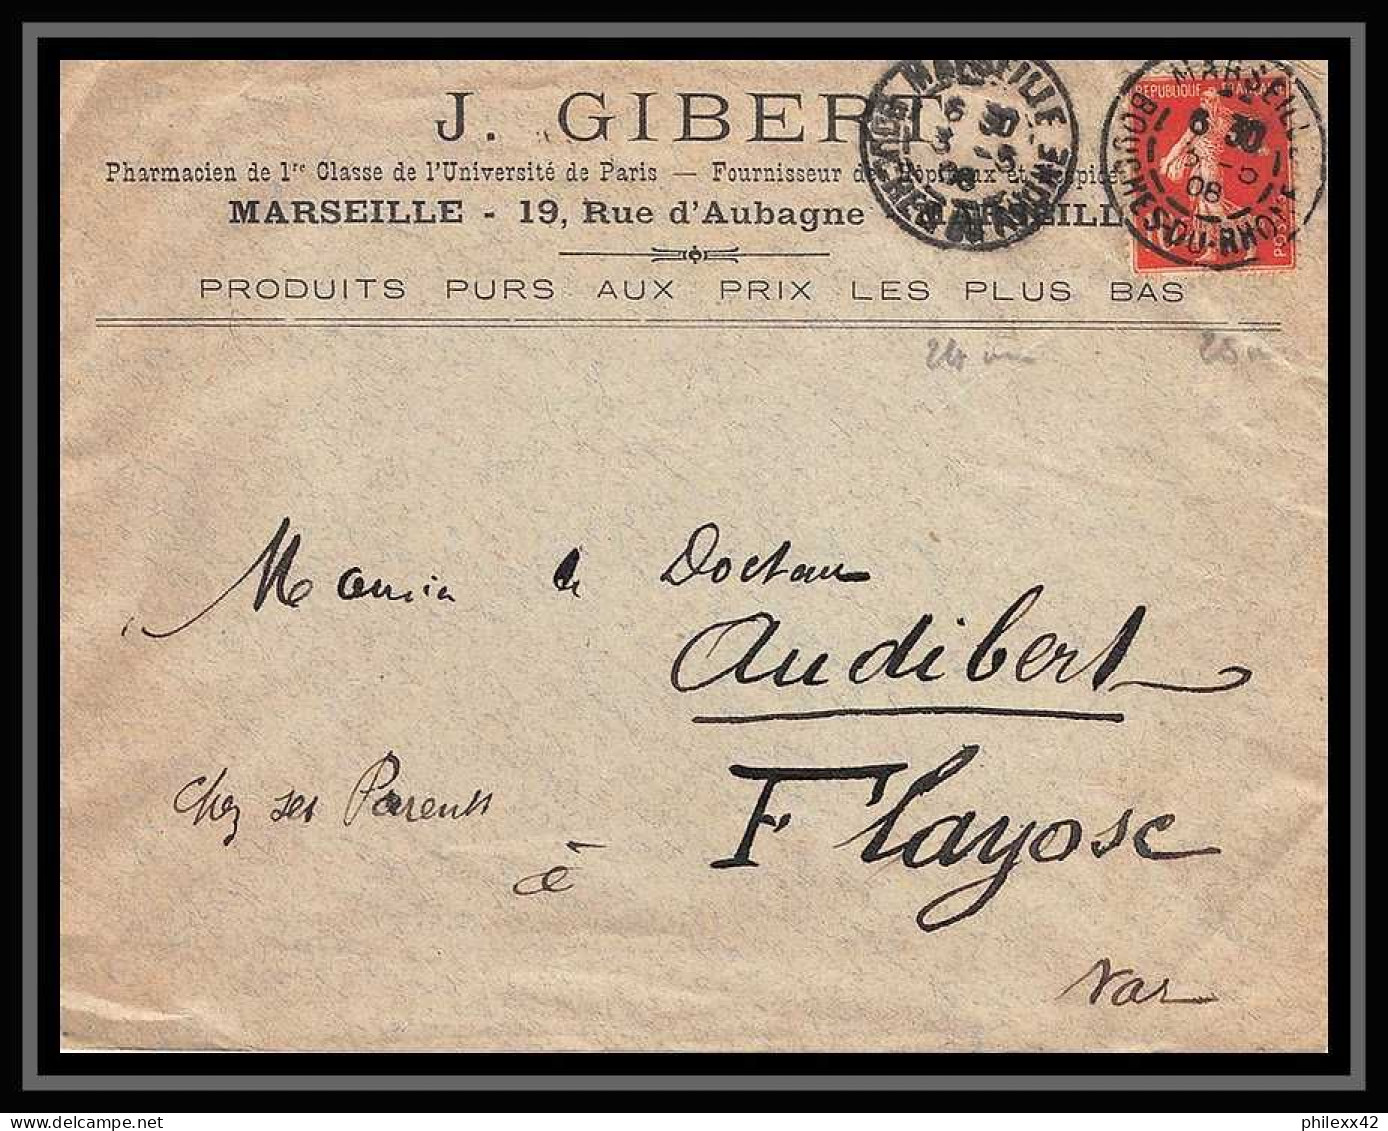 115277 lot de 15 Lettres cover Carte postale (postcard) avis de reception Bouches du rhone Marseille A4